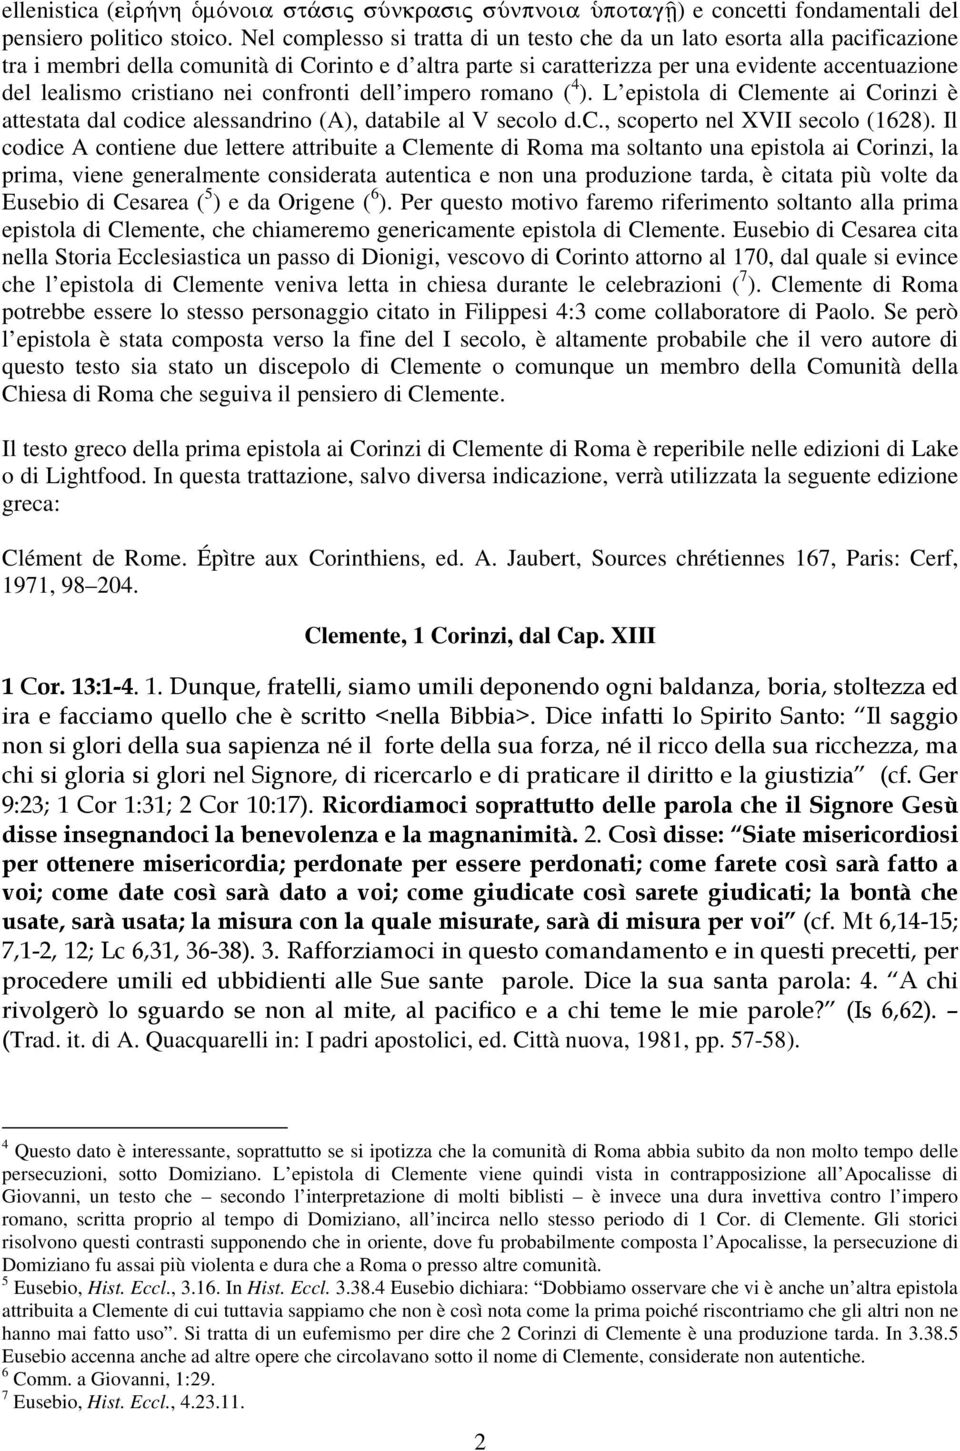 cristiano nei confronti dell impero romano ( 4 ). L epistola di Clemente ai Corinzi è attestata dal codice alessandrino (A), databile al V secolo d.c., scoperto nel XVII secolo (1628).